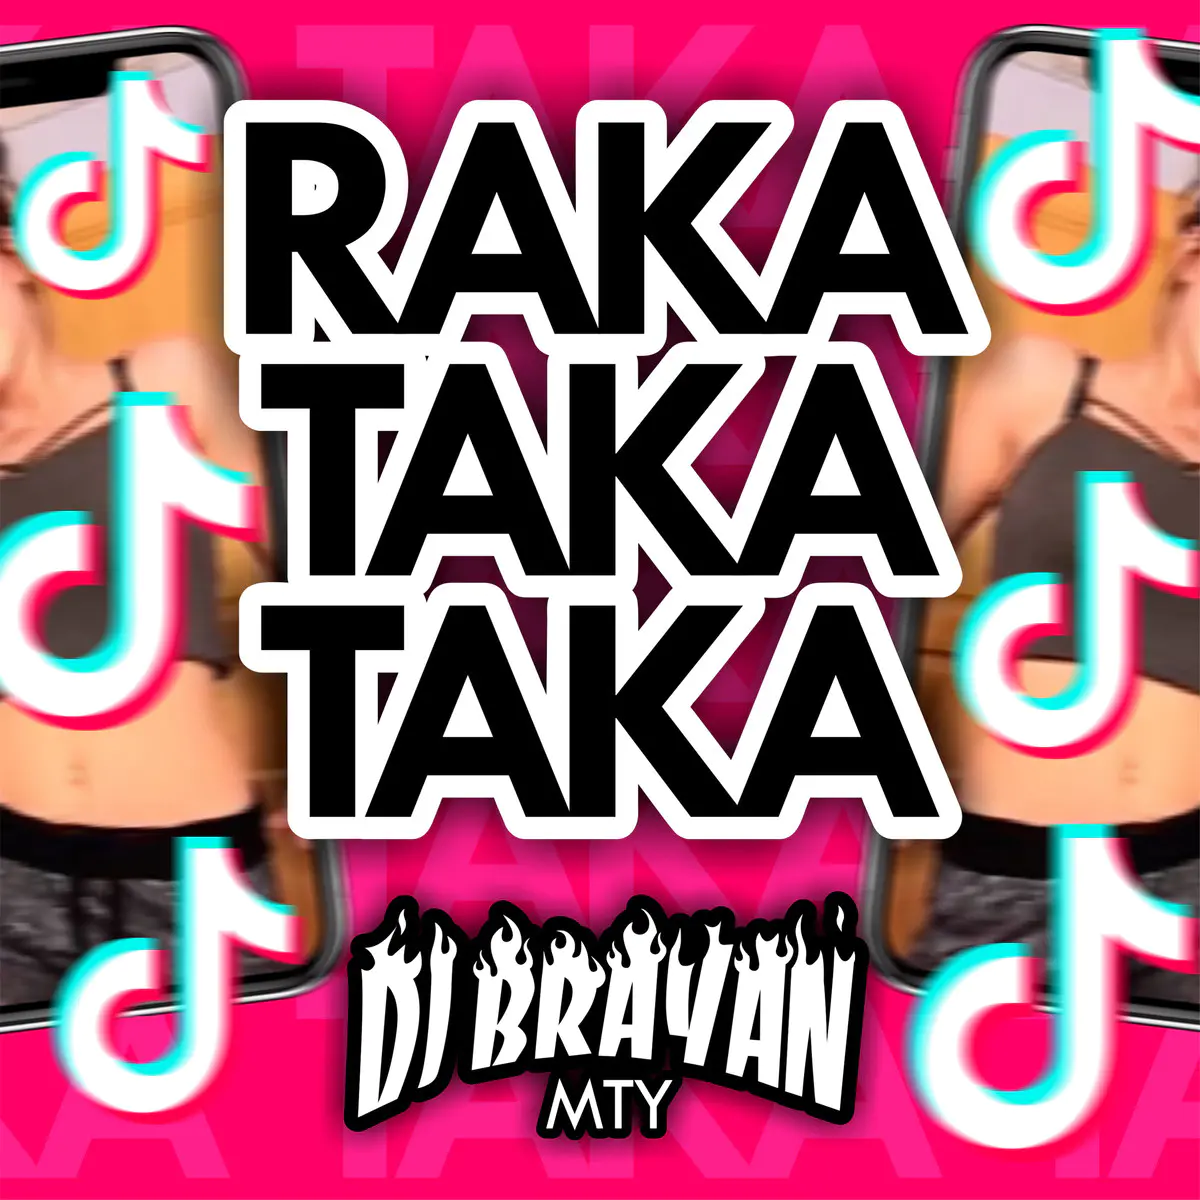 Taka taka песня тренд. Така така песня. Taka taka taka ta DJ Brunin перевод. One little boy Sings a Song "taka taka tumgata".